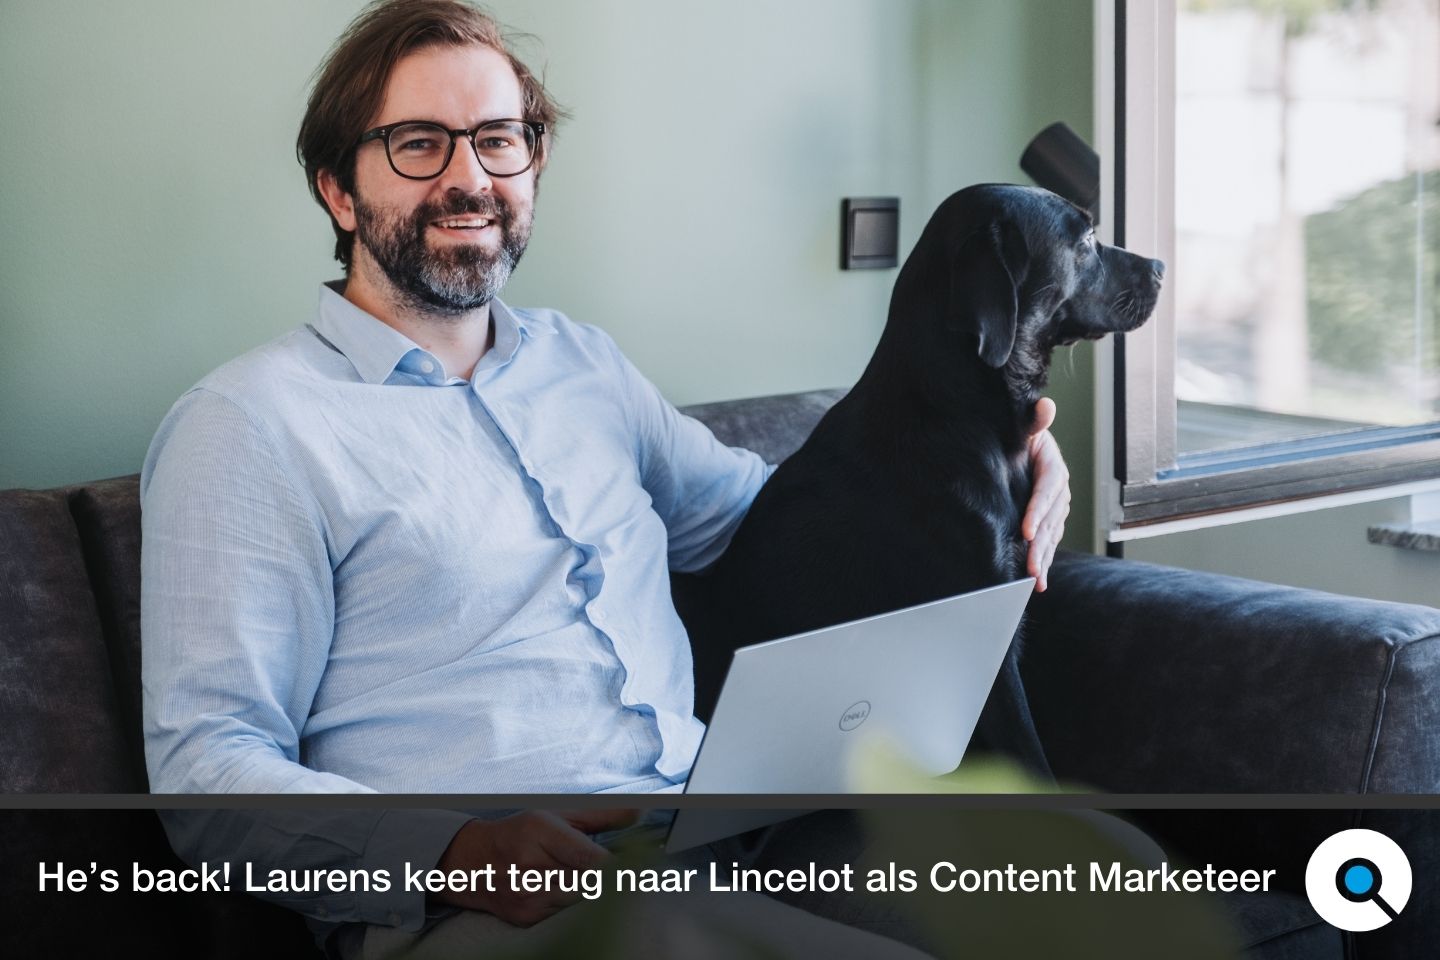 He's back - Laurens keert terug naar Lincelot als Content Marketeer